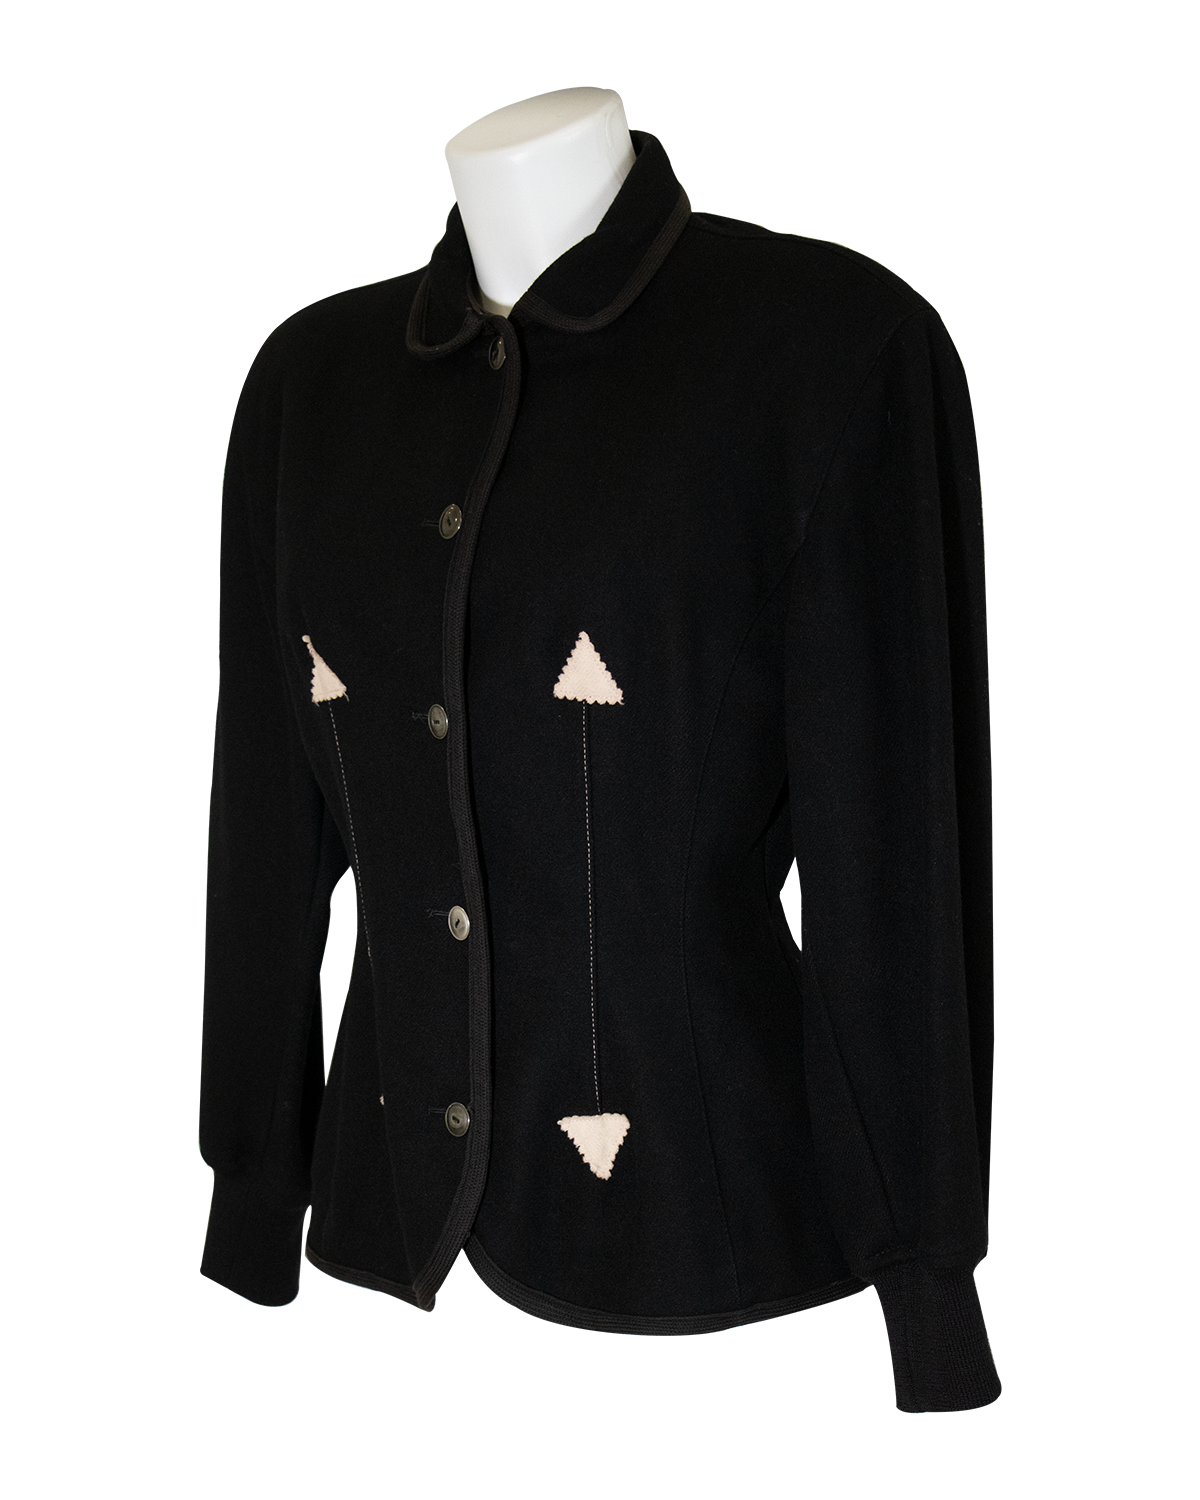 Jean Paul Gaultier - Black Wool Jacket FW 1988/1989